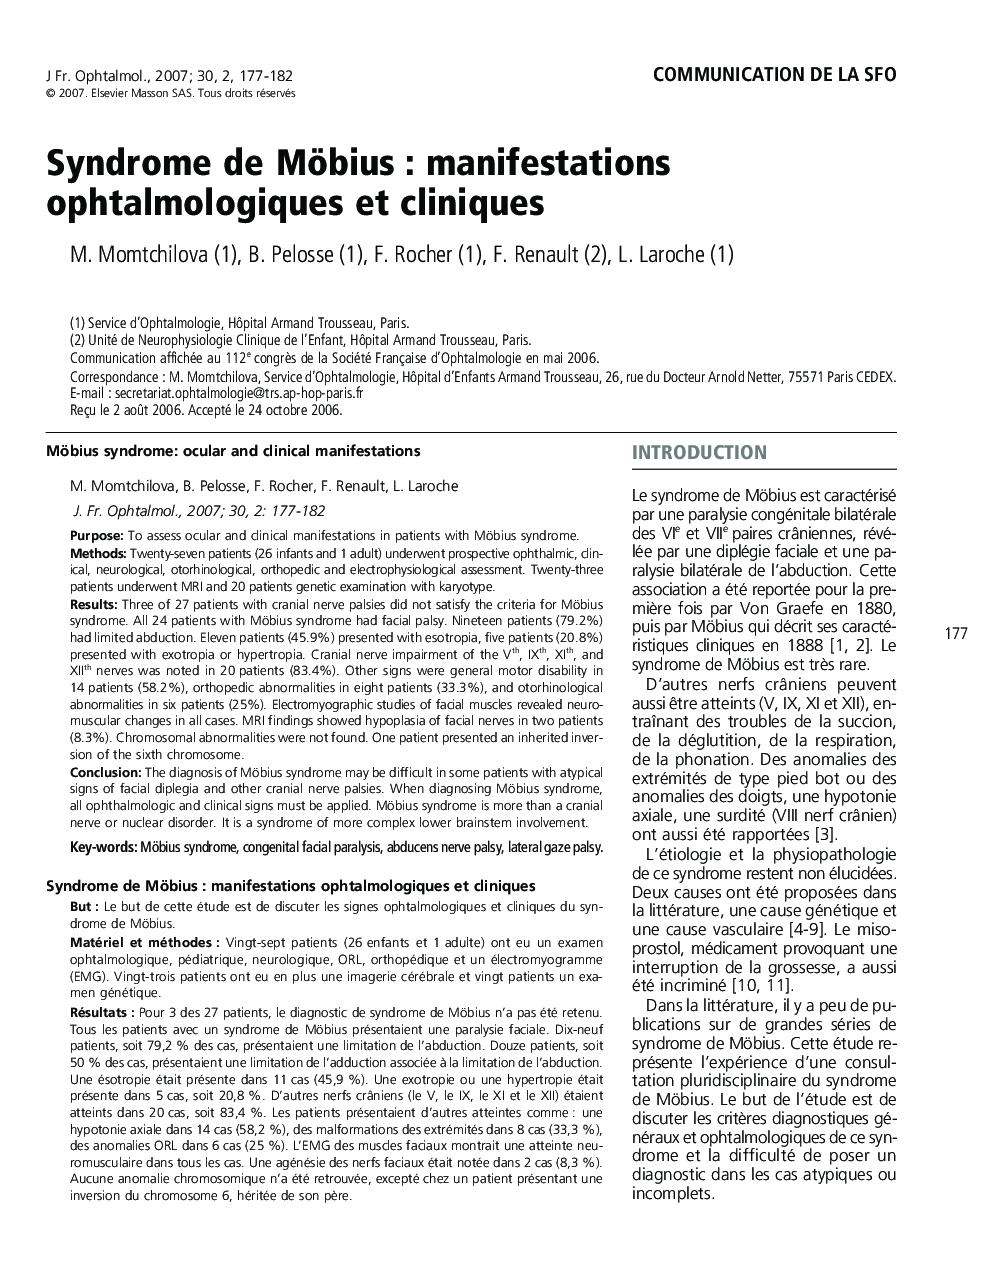 Communication de la sfoSyndrome de Möbius : manifestations ophtalmologiques et cliniquesMöbius syndrome: ocular and clinical manifestations